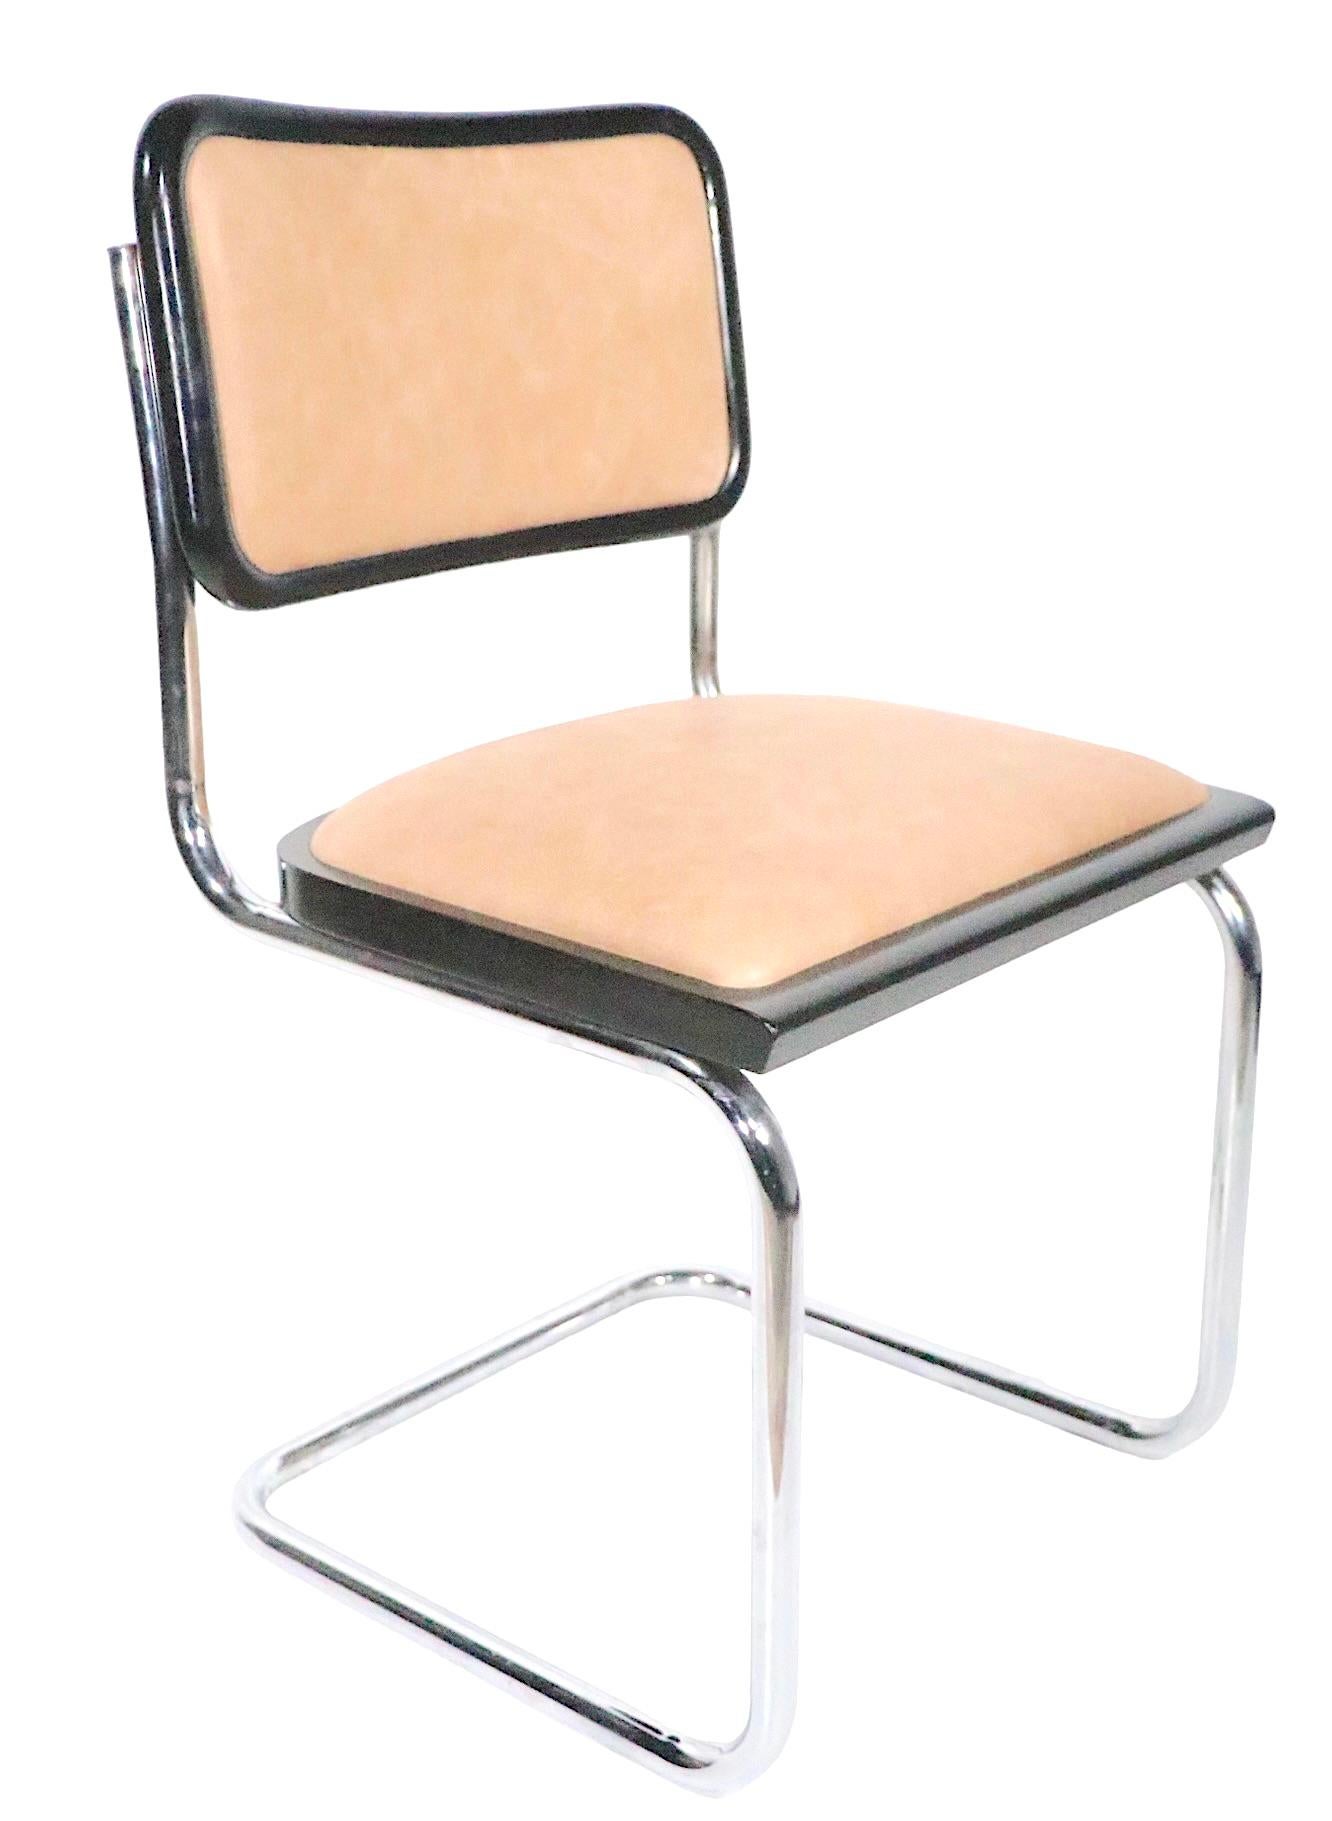 Exceptionnel ensemble de quatre chaises CIRCA, conçues à l'origine par Marcel Breuer vers les années 1920. Il s'agit d'exemples plus récents, fabriqués en Italie vers les années 1970.
 Les fauteuils ont été récemment retapissés en cuir fauve. Ils